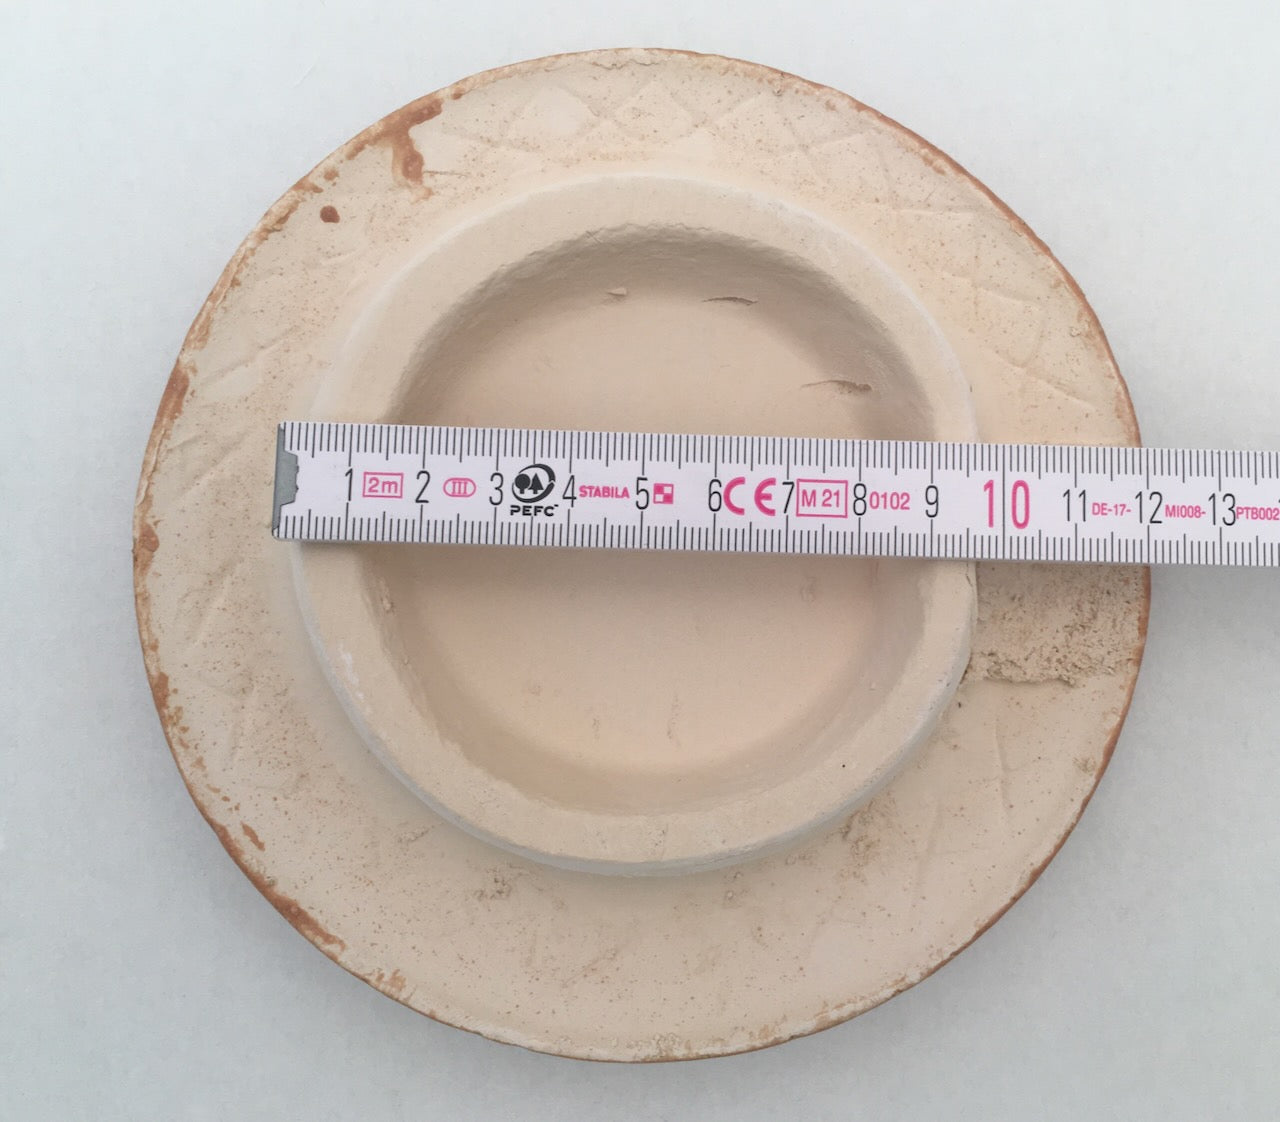 Reinigungskachel Mocca braun, Putzdeckel für Kachelofen, rund 15 cm